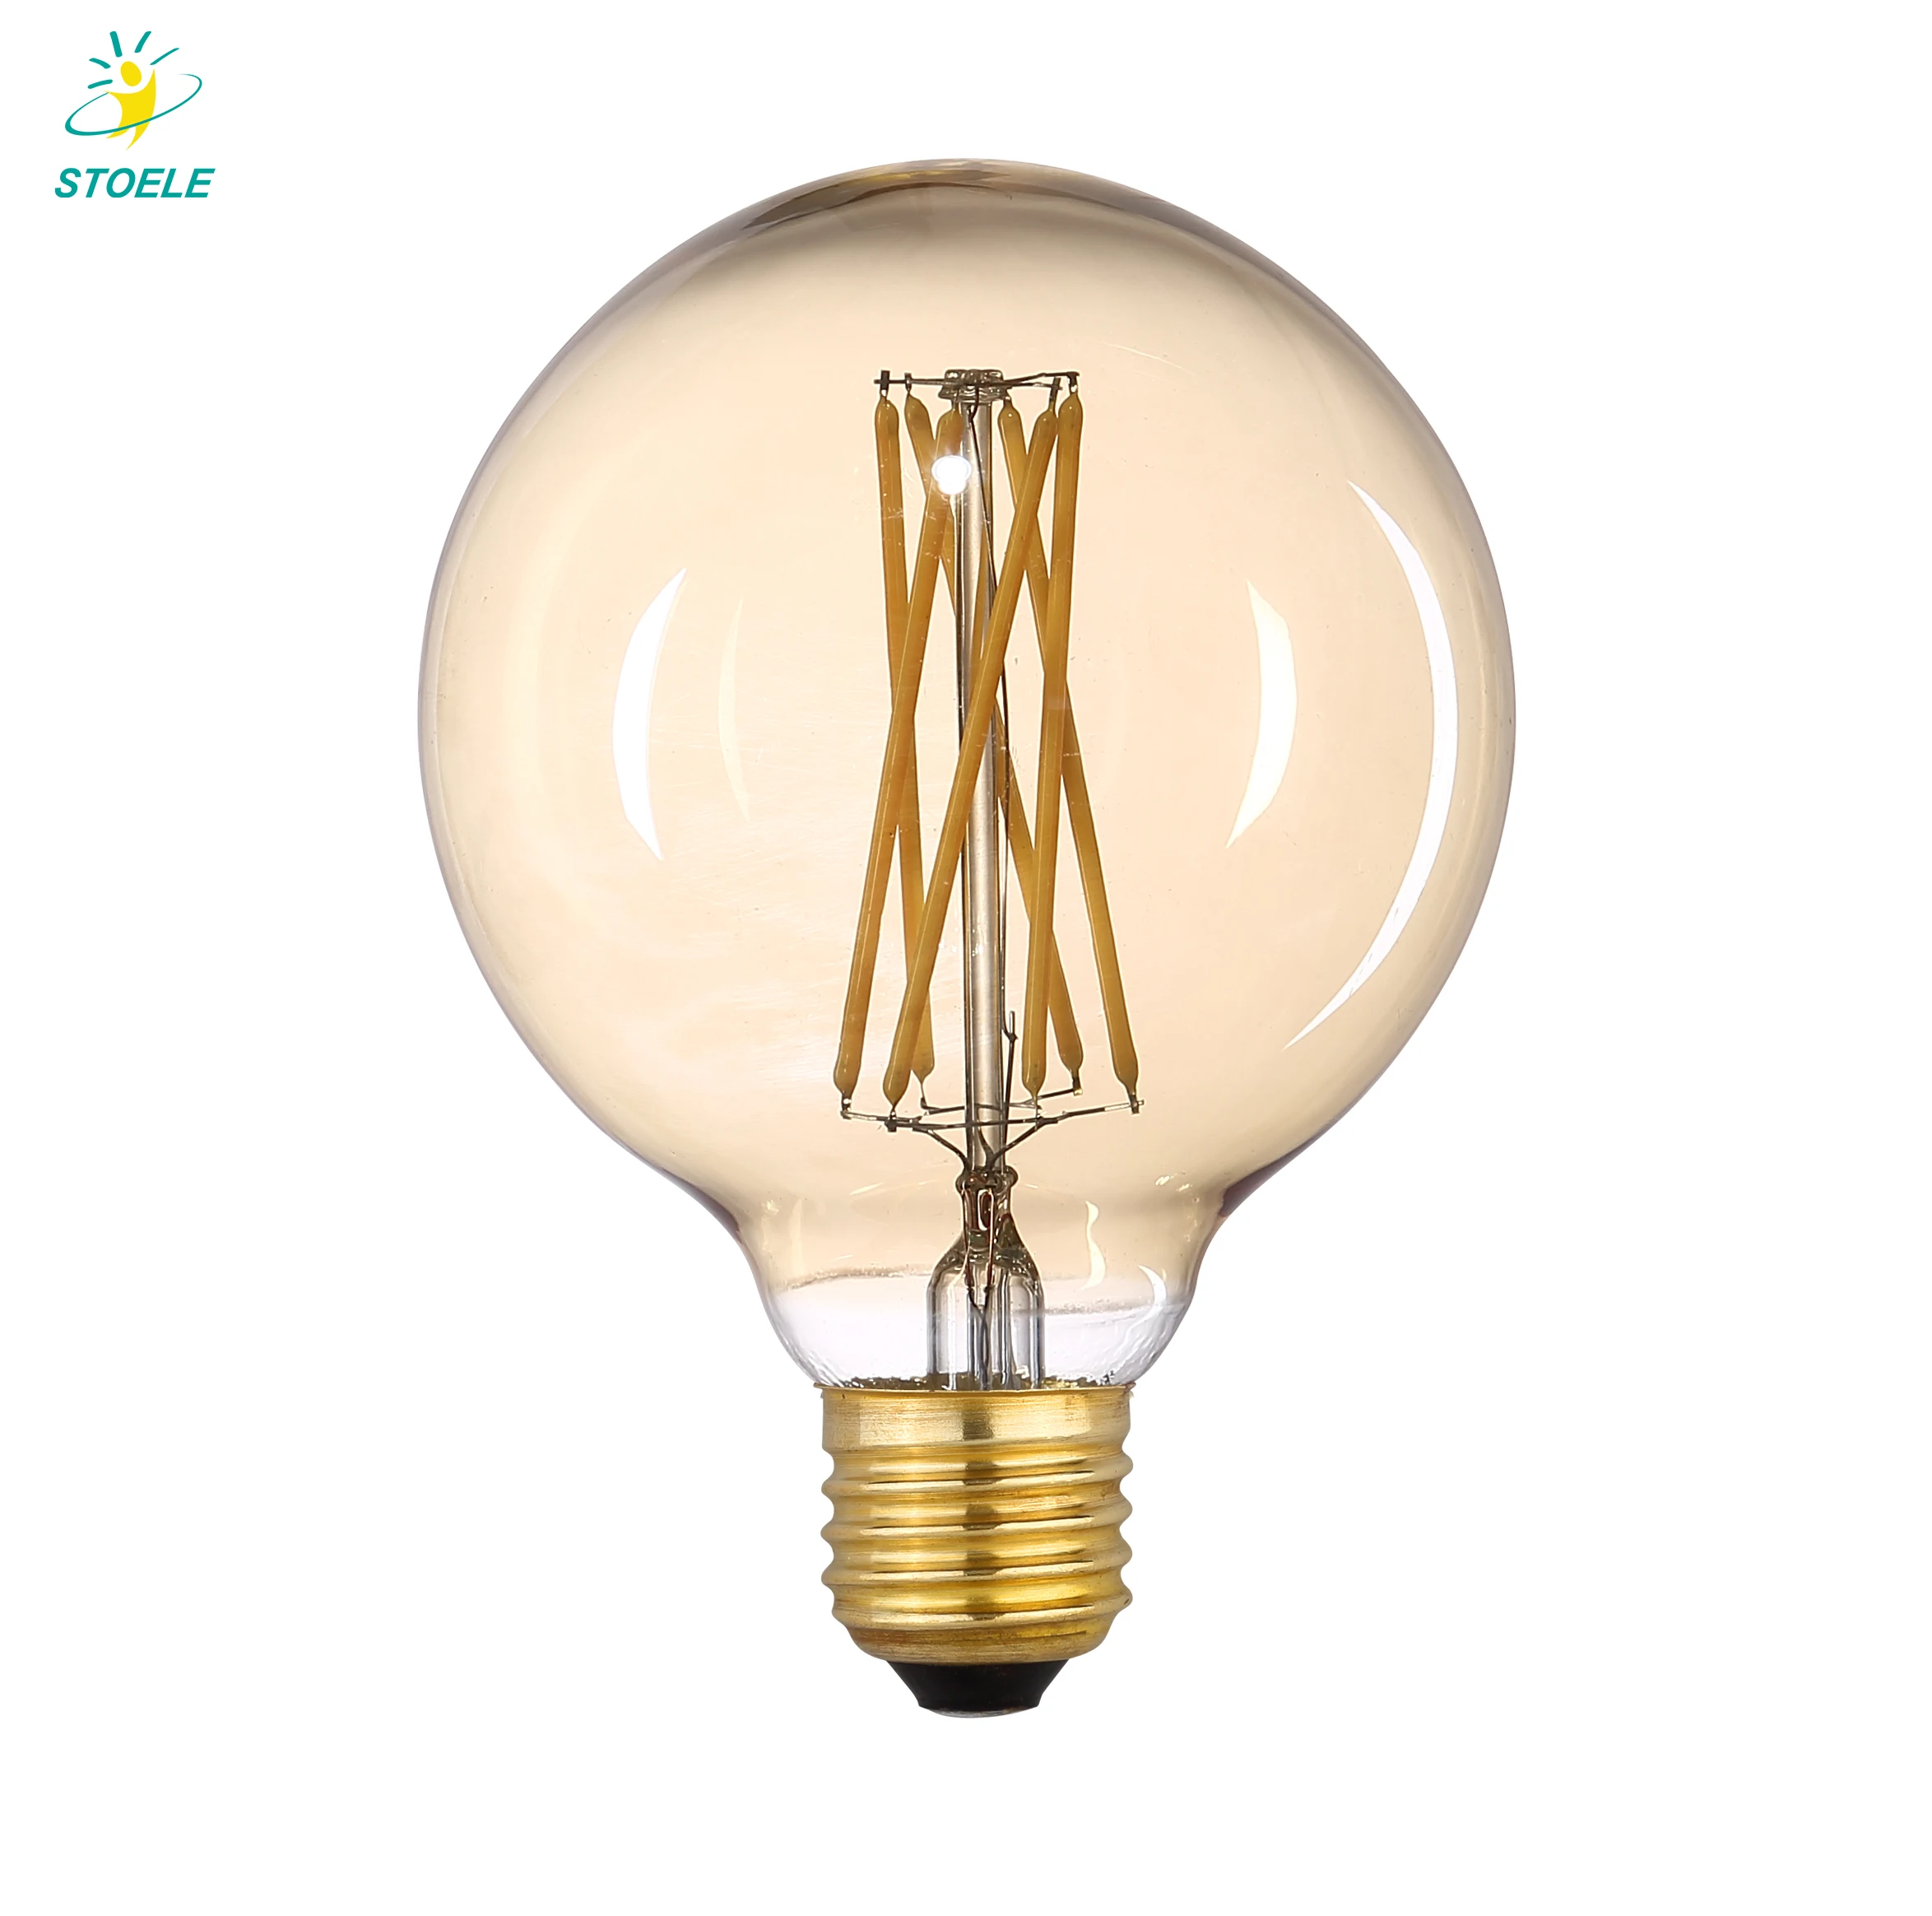 Led 4/5/7Watt Smart Edison Bulb Ceiling Light Lamp Vintage